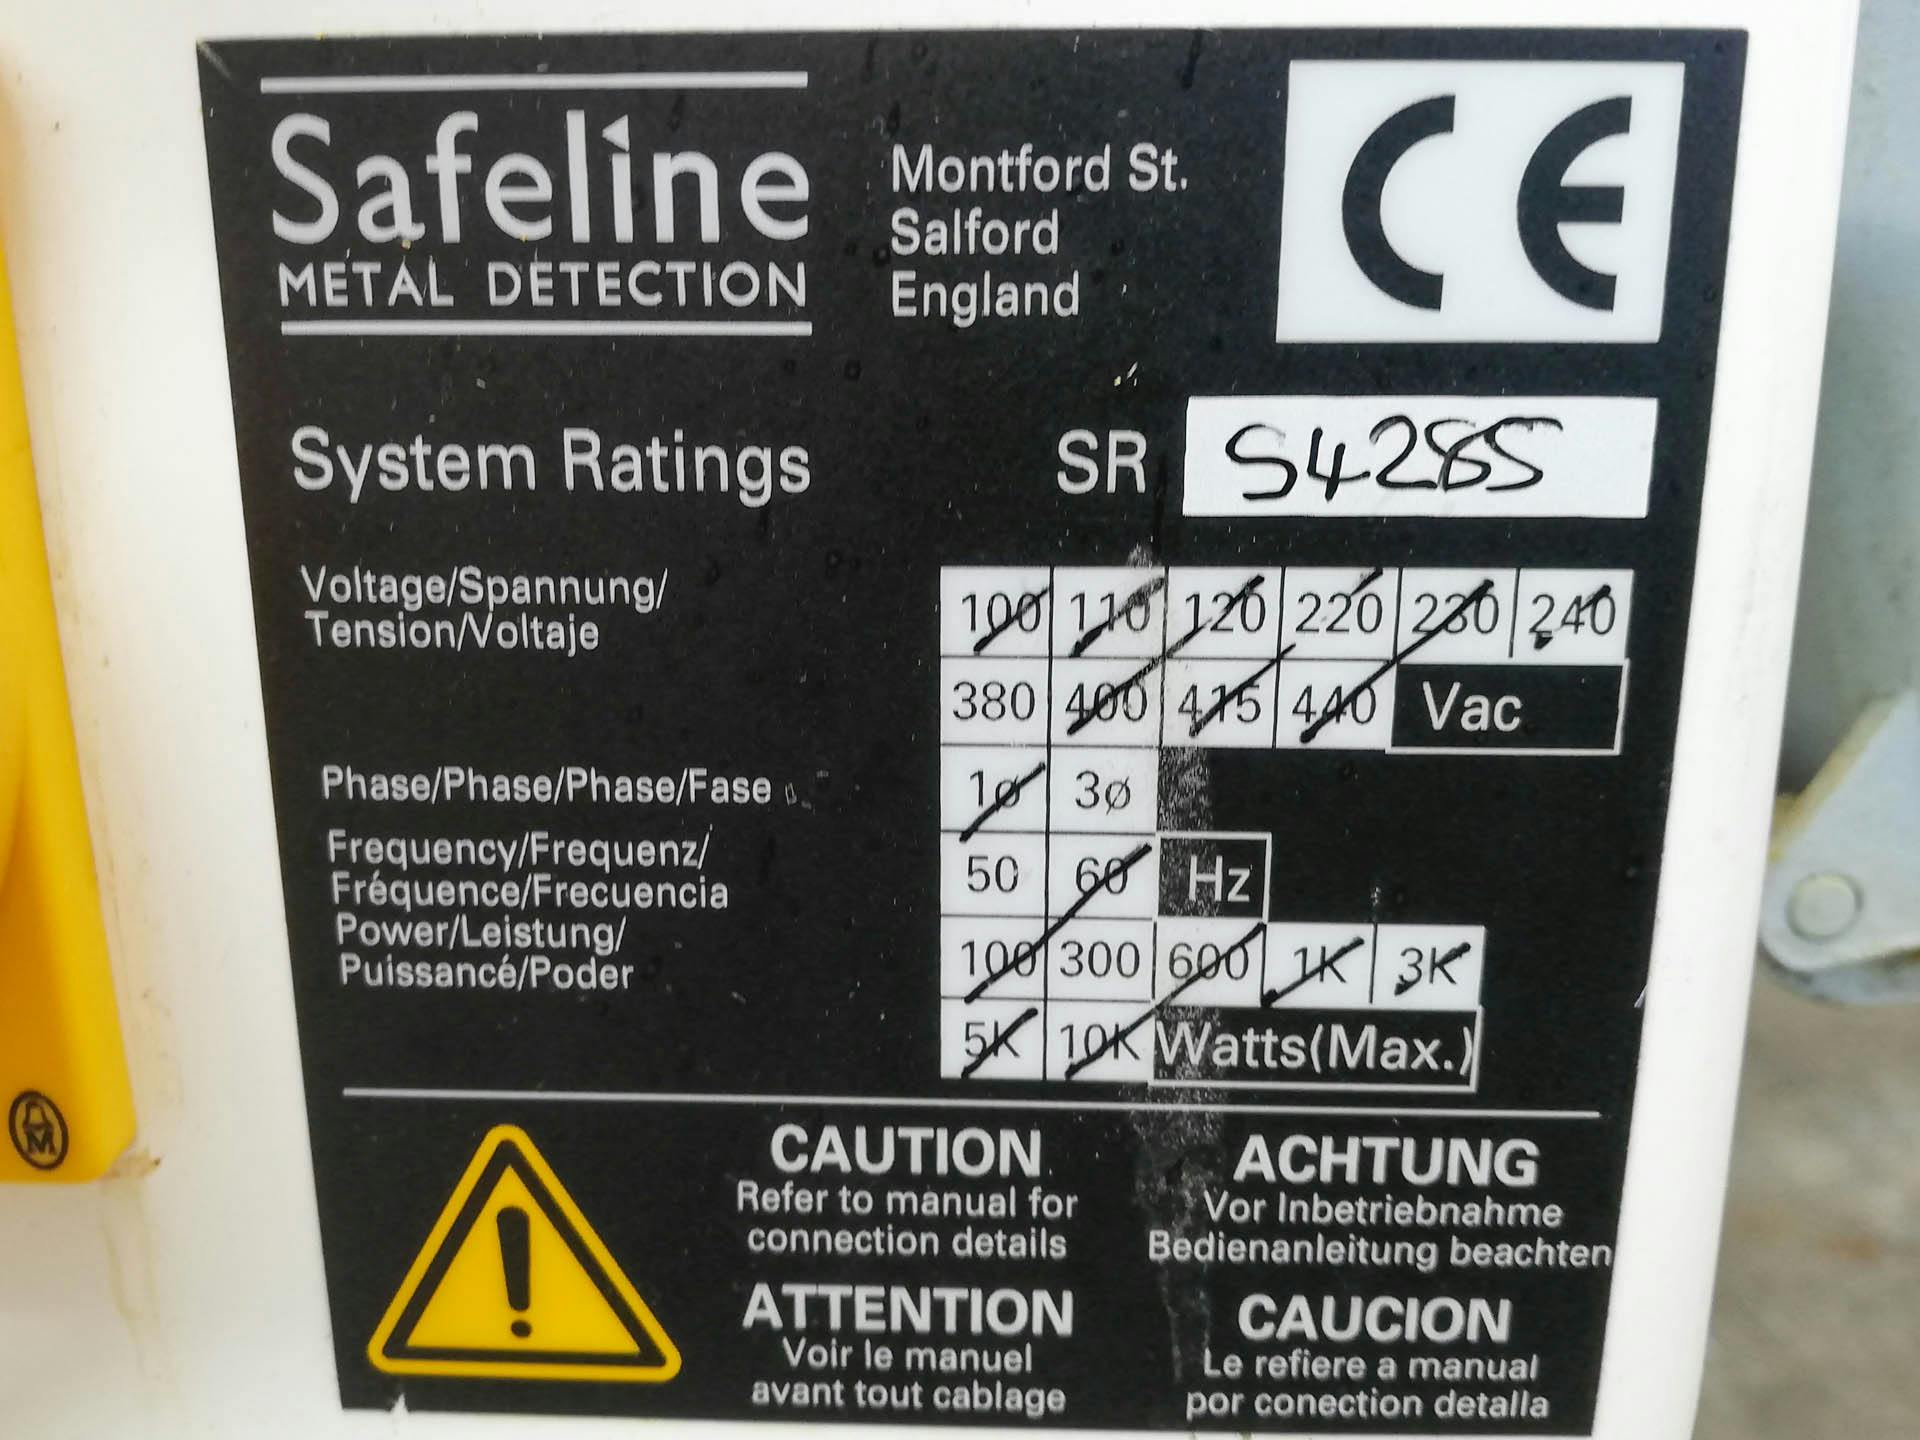 Safeline Uk Signature 2 - Metaaldetektor - image 5